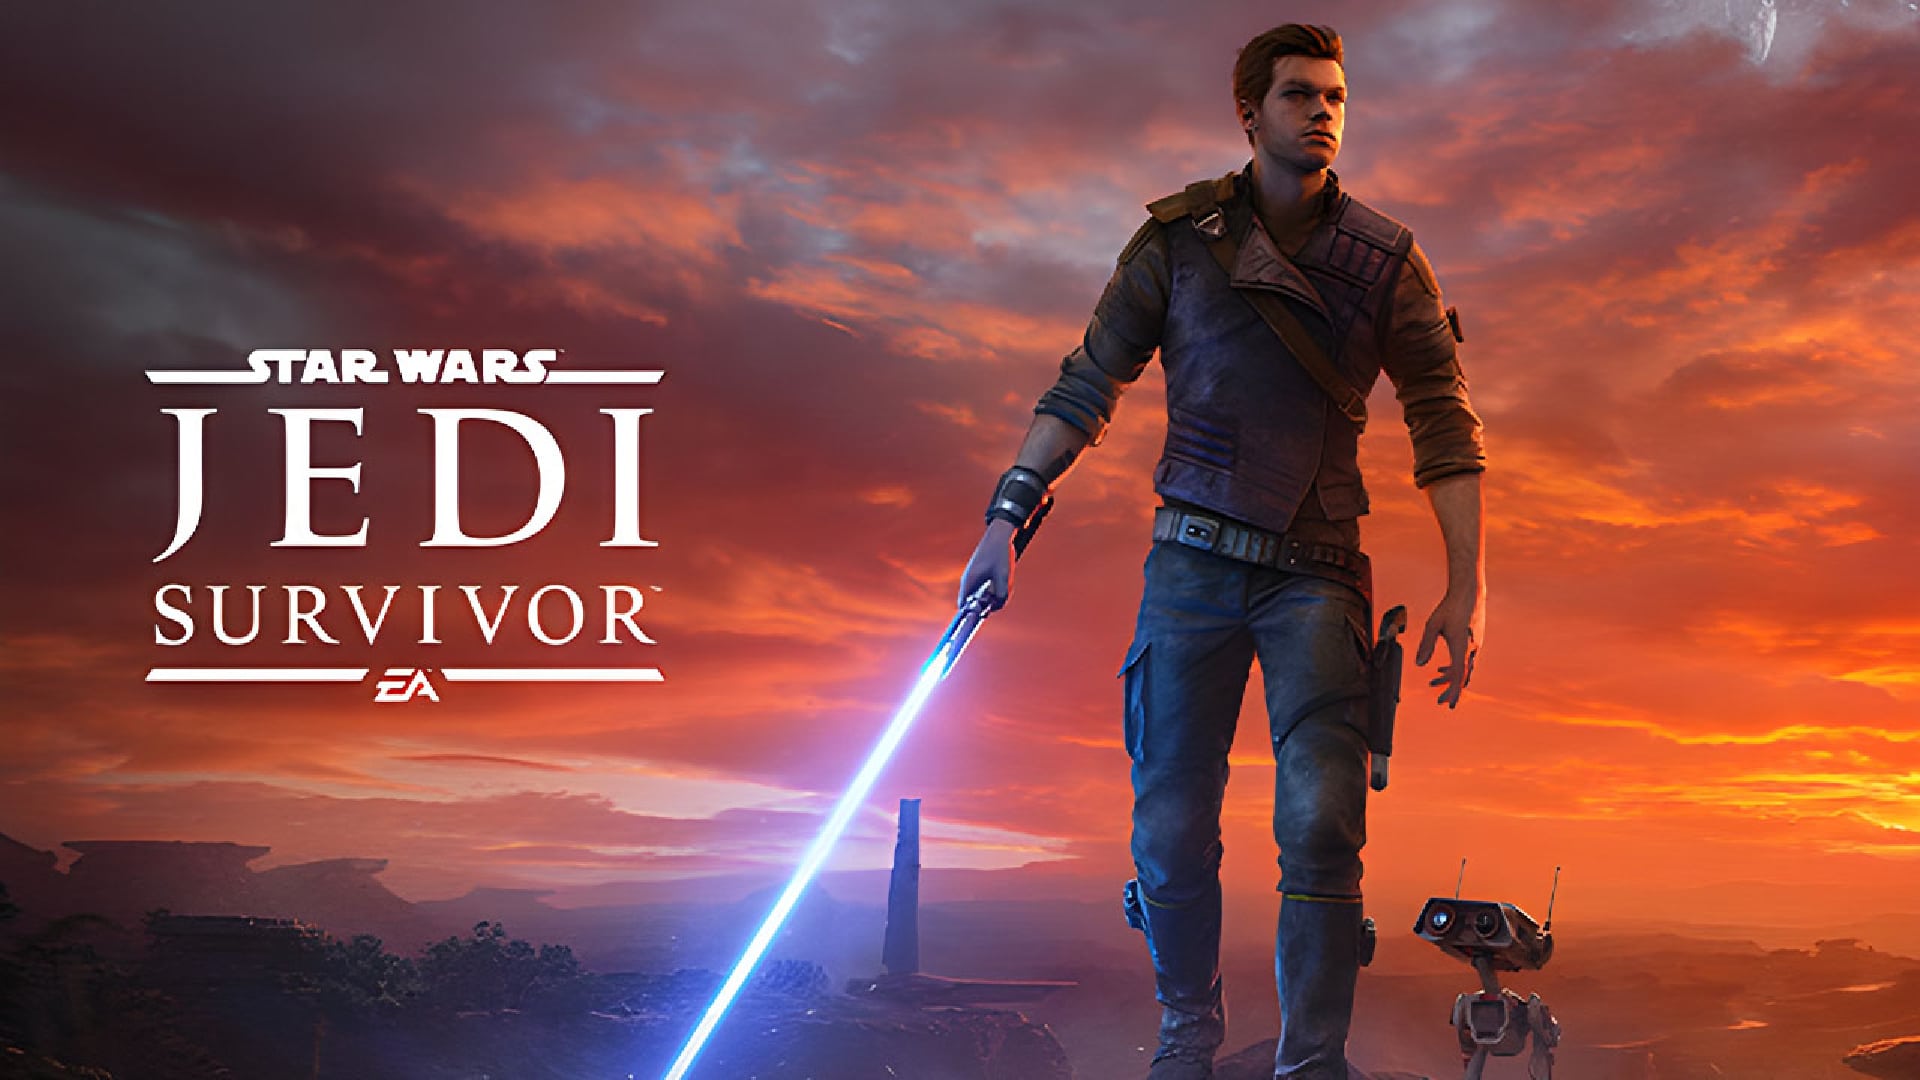 Star Wars Jedi Survivor trailer release date